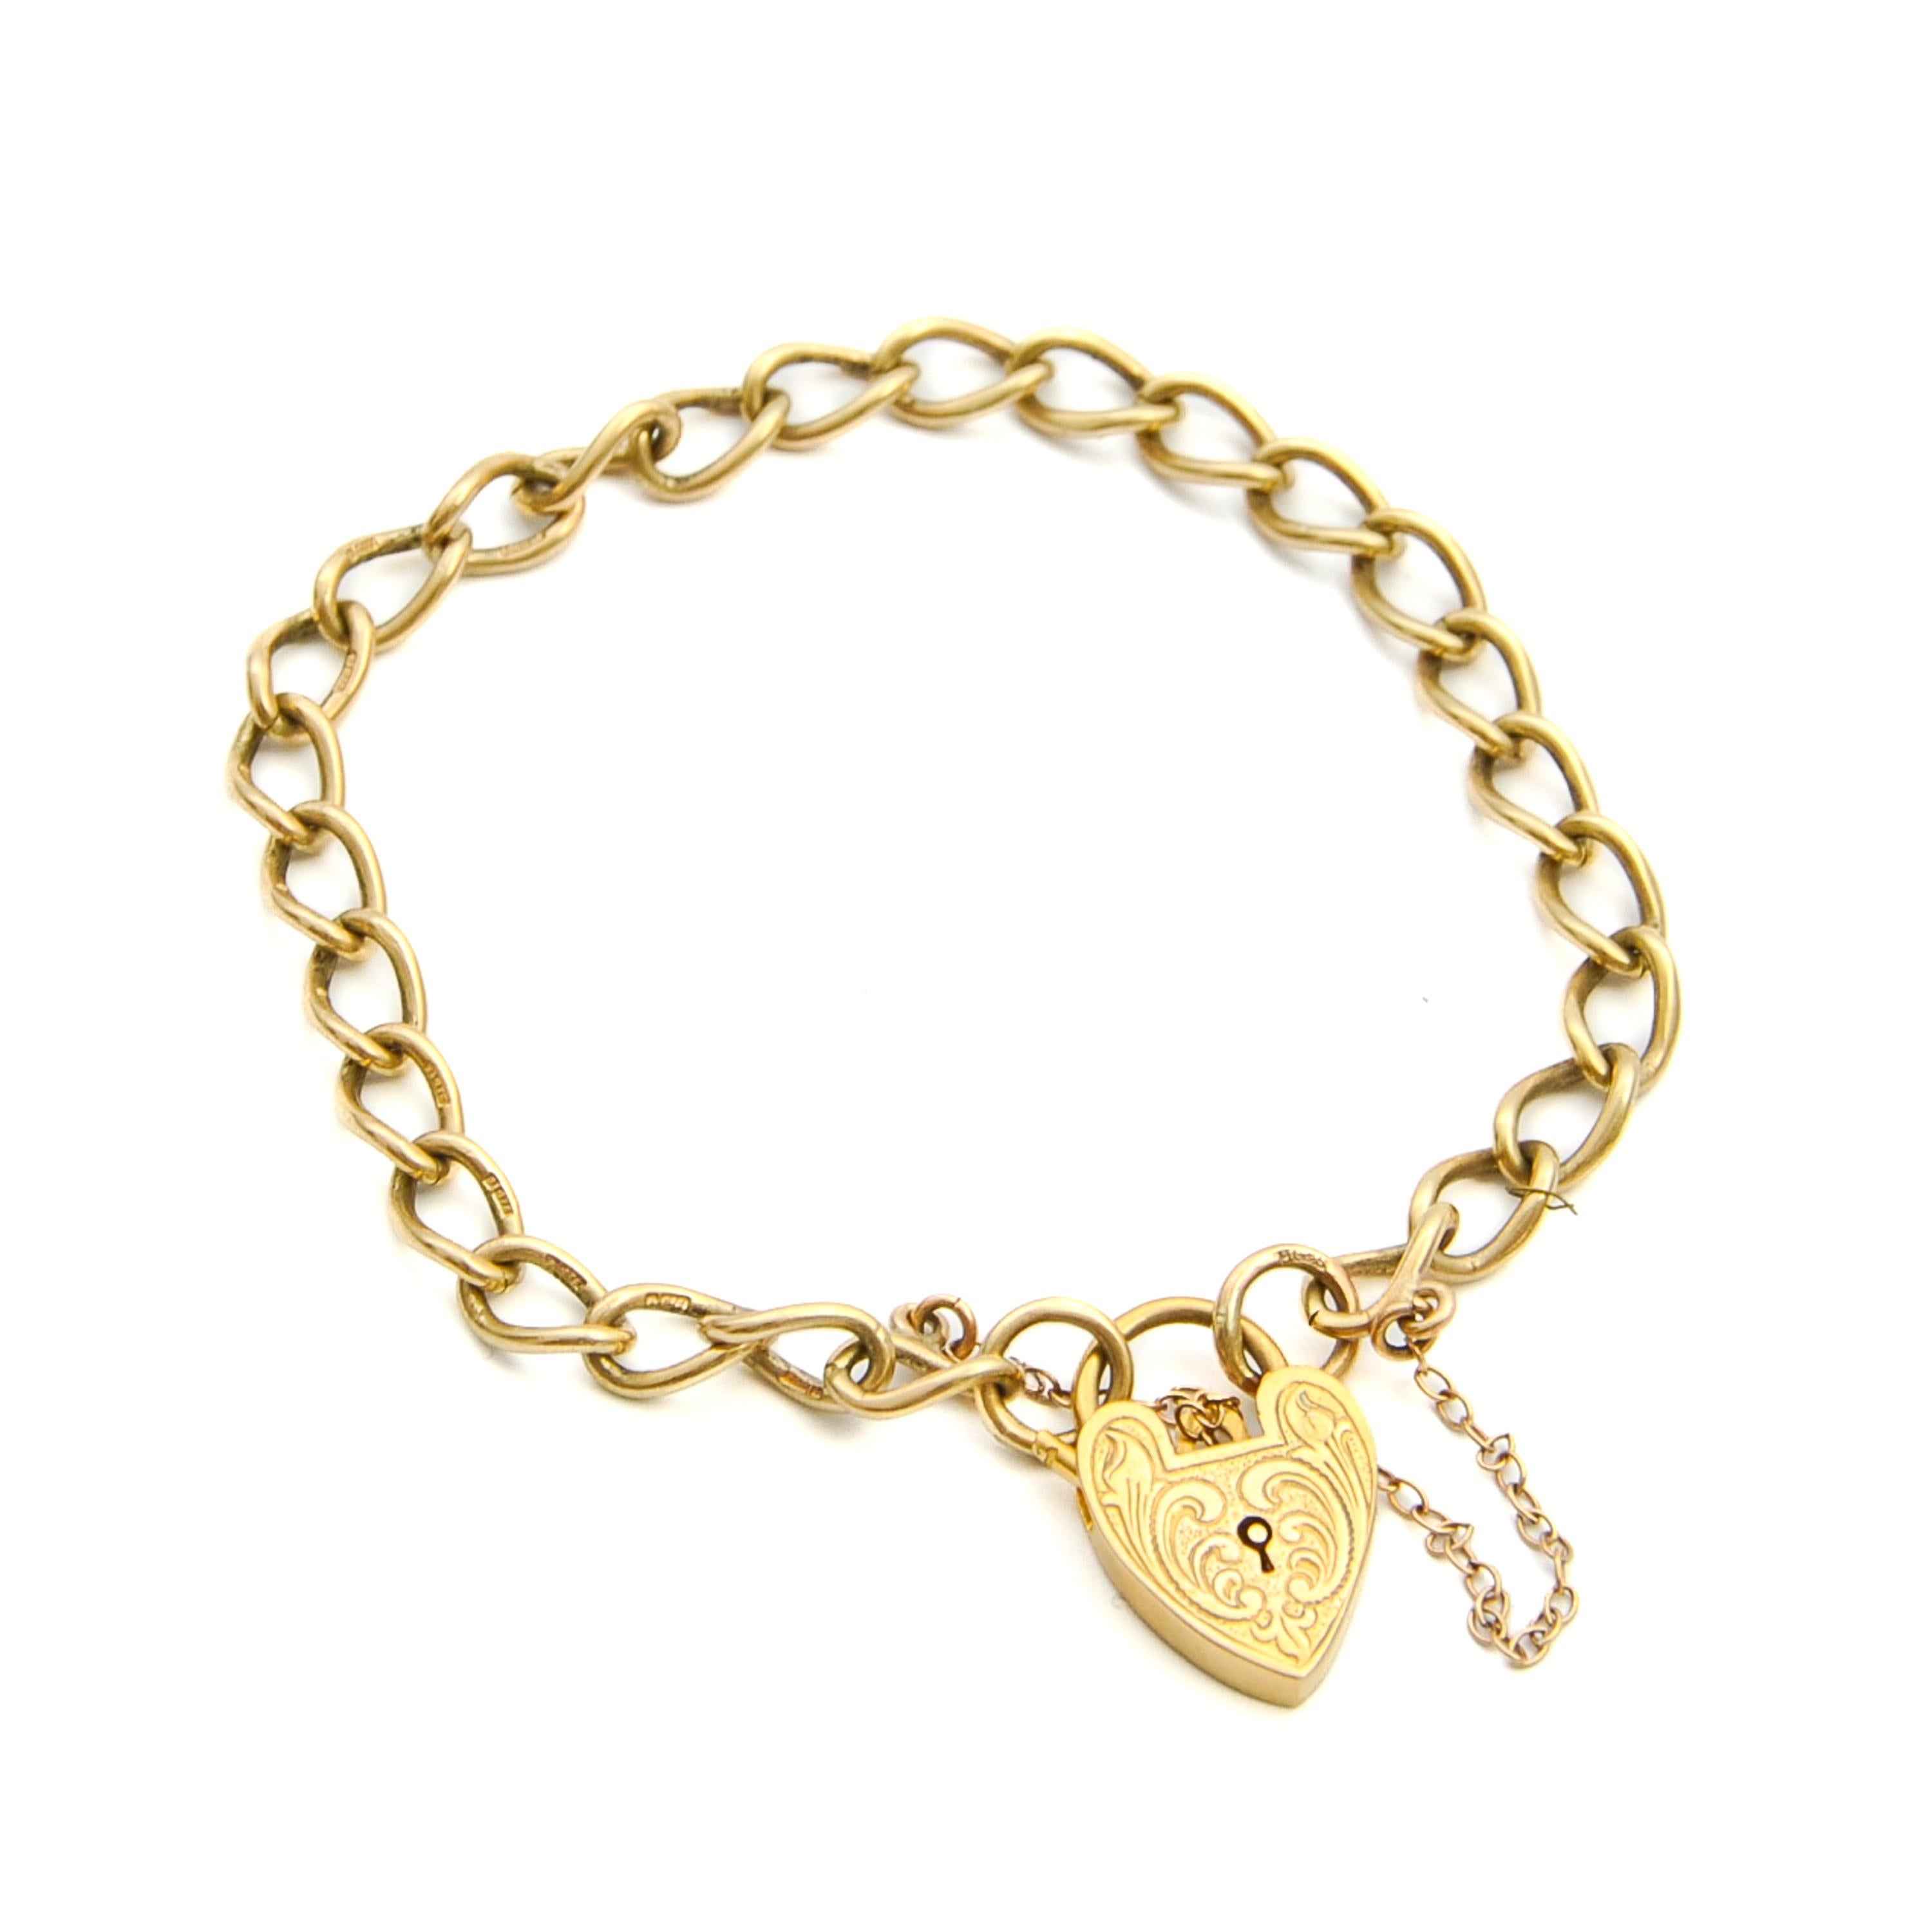 Un joli bracelet à breloques en forme de cadenas avec une fermeture en forme de cœur gravé. La chaîne et le cœur sont créés en or 9 carats. Le cadenas en forme de cœur présente de belles gravures sur le devant et est équipé d'une chaîne de sécurité.